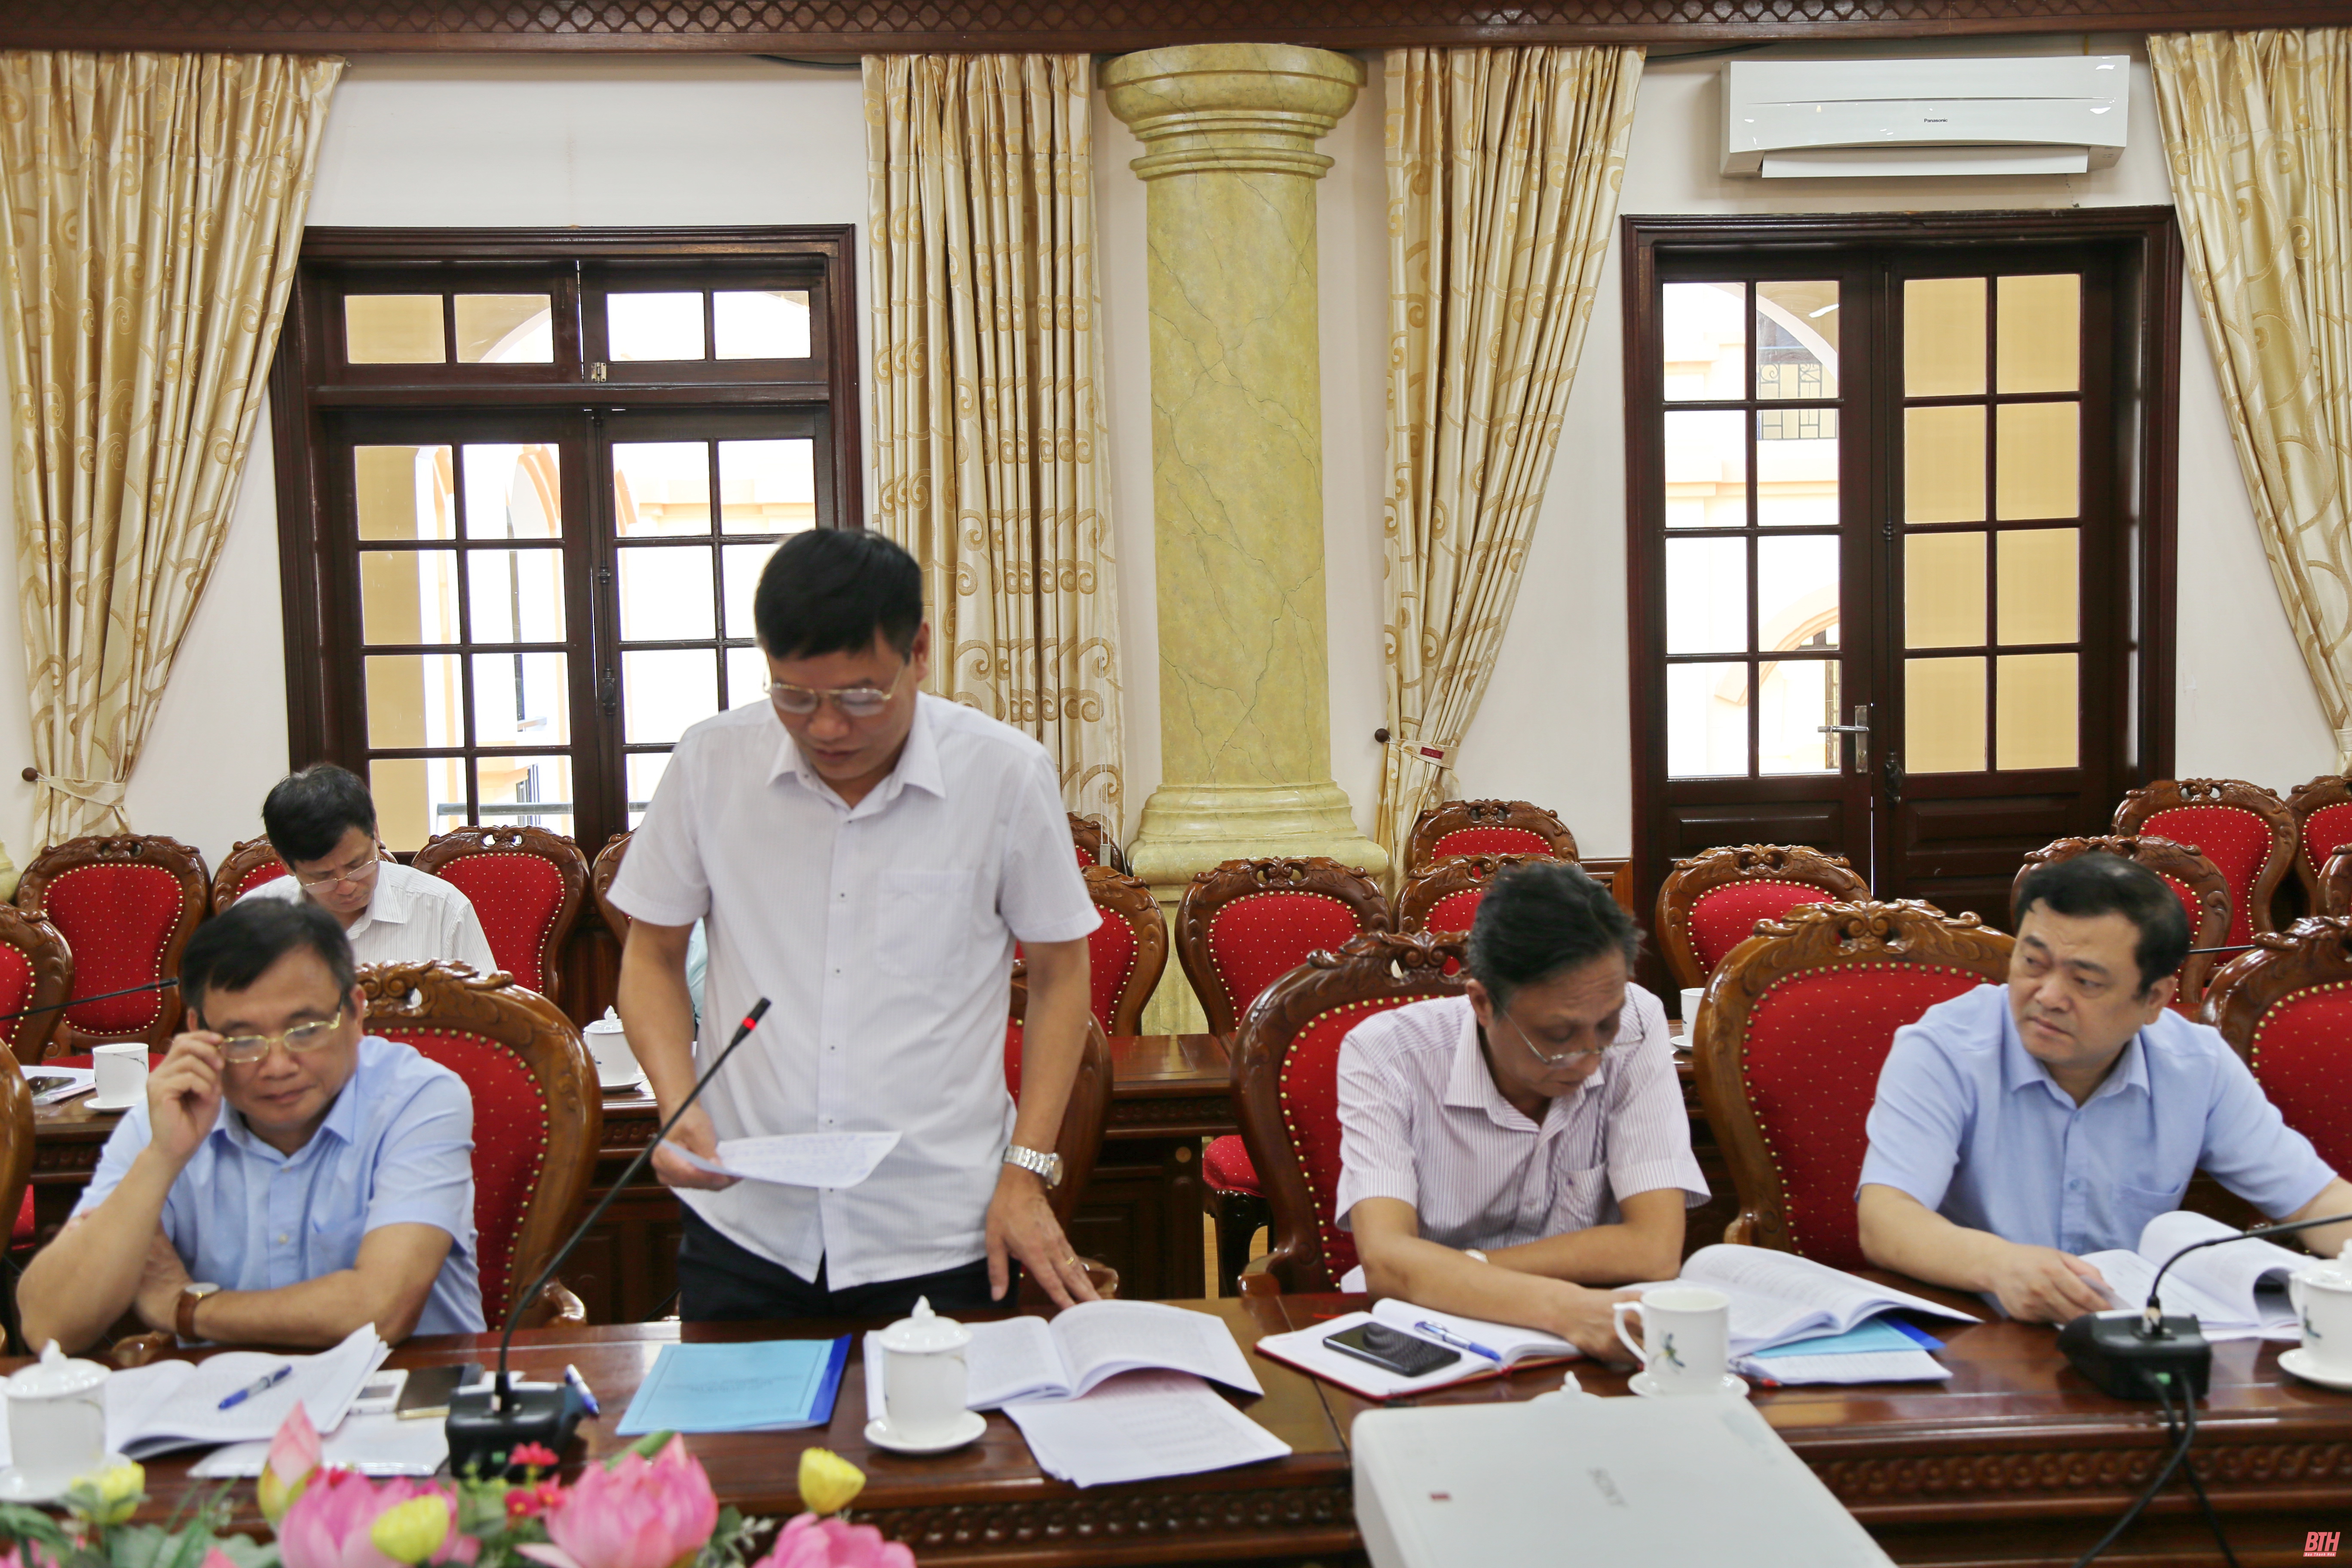 Ban Thường vụ Tỉnh ủy Thanh Hóa duyệt nội dung Đại hội đại biểu Đảng bộ huyện Thiệu Hóa